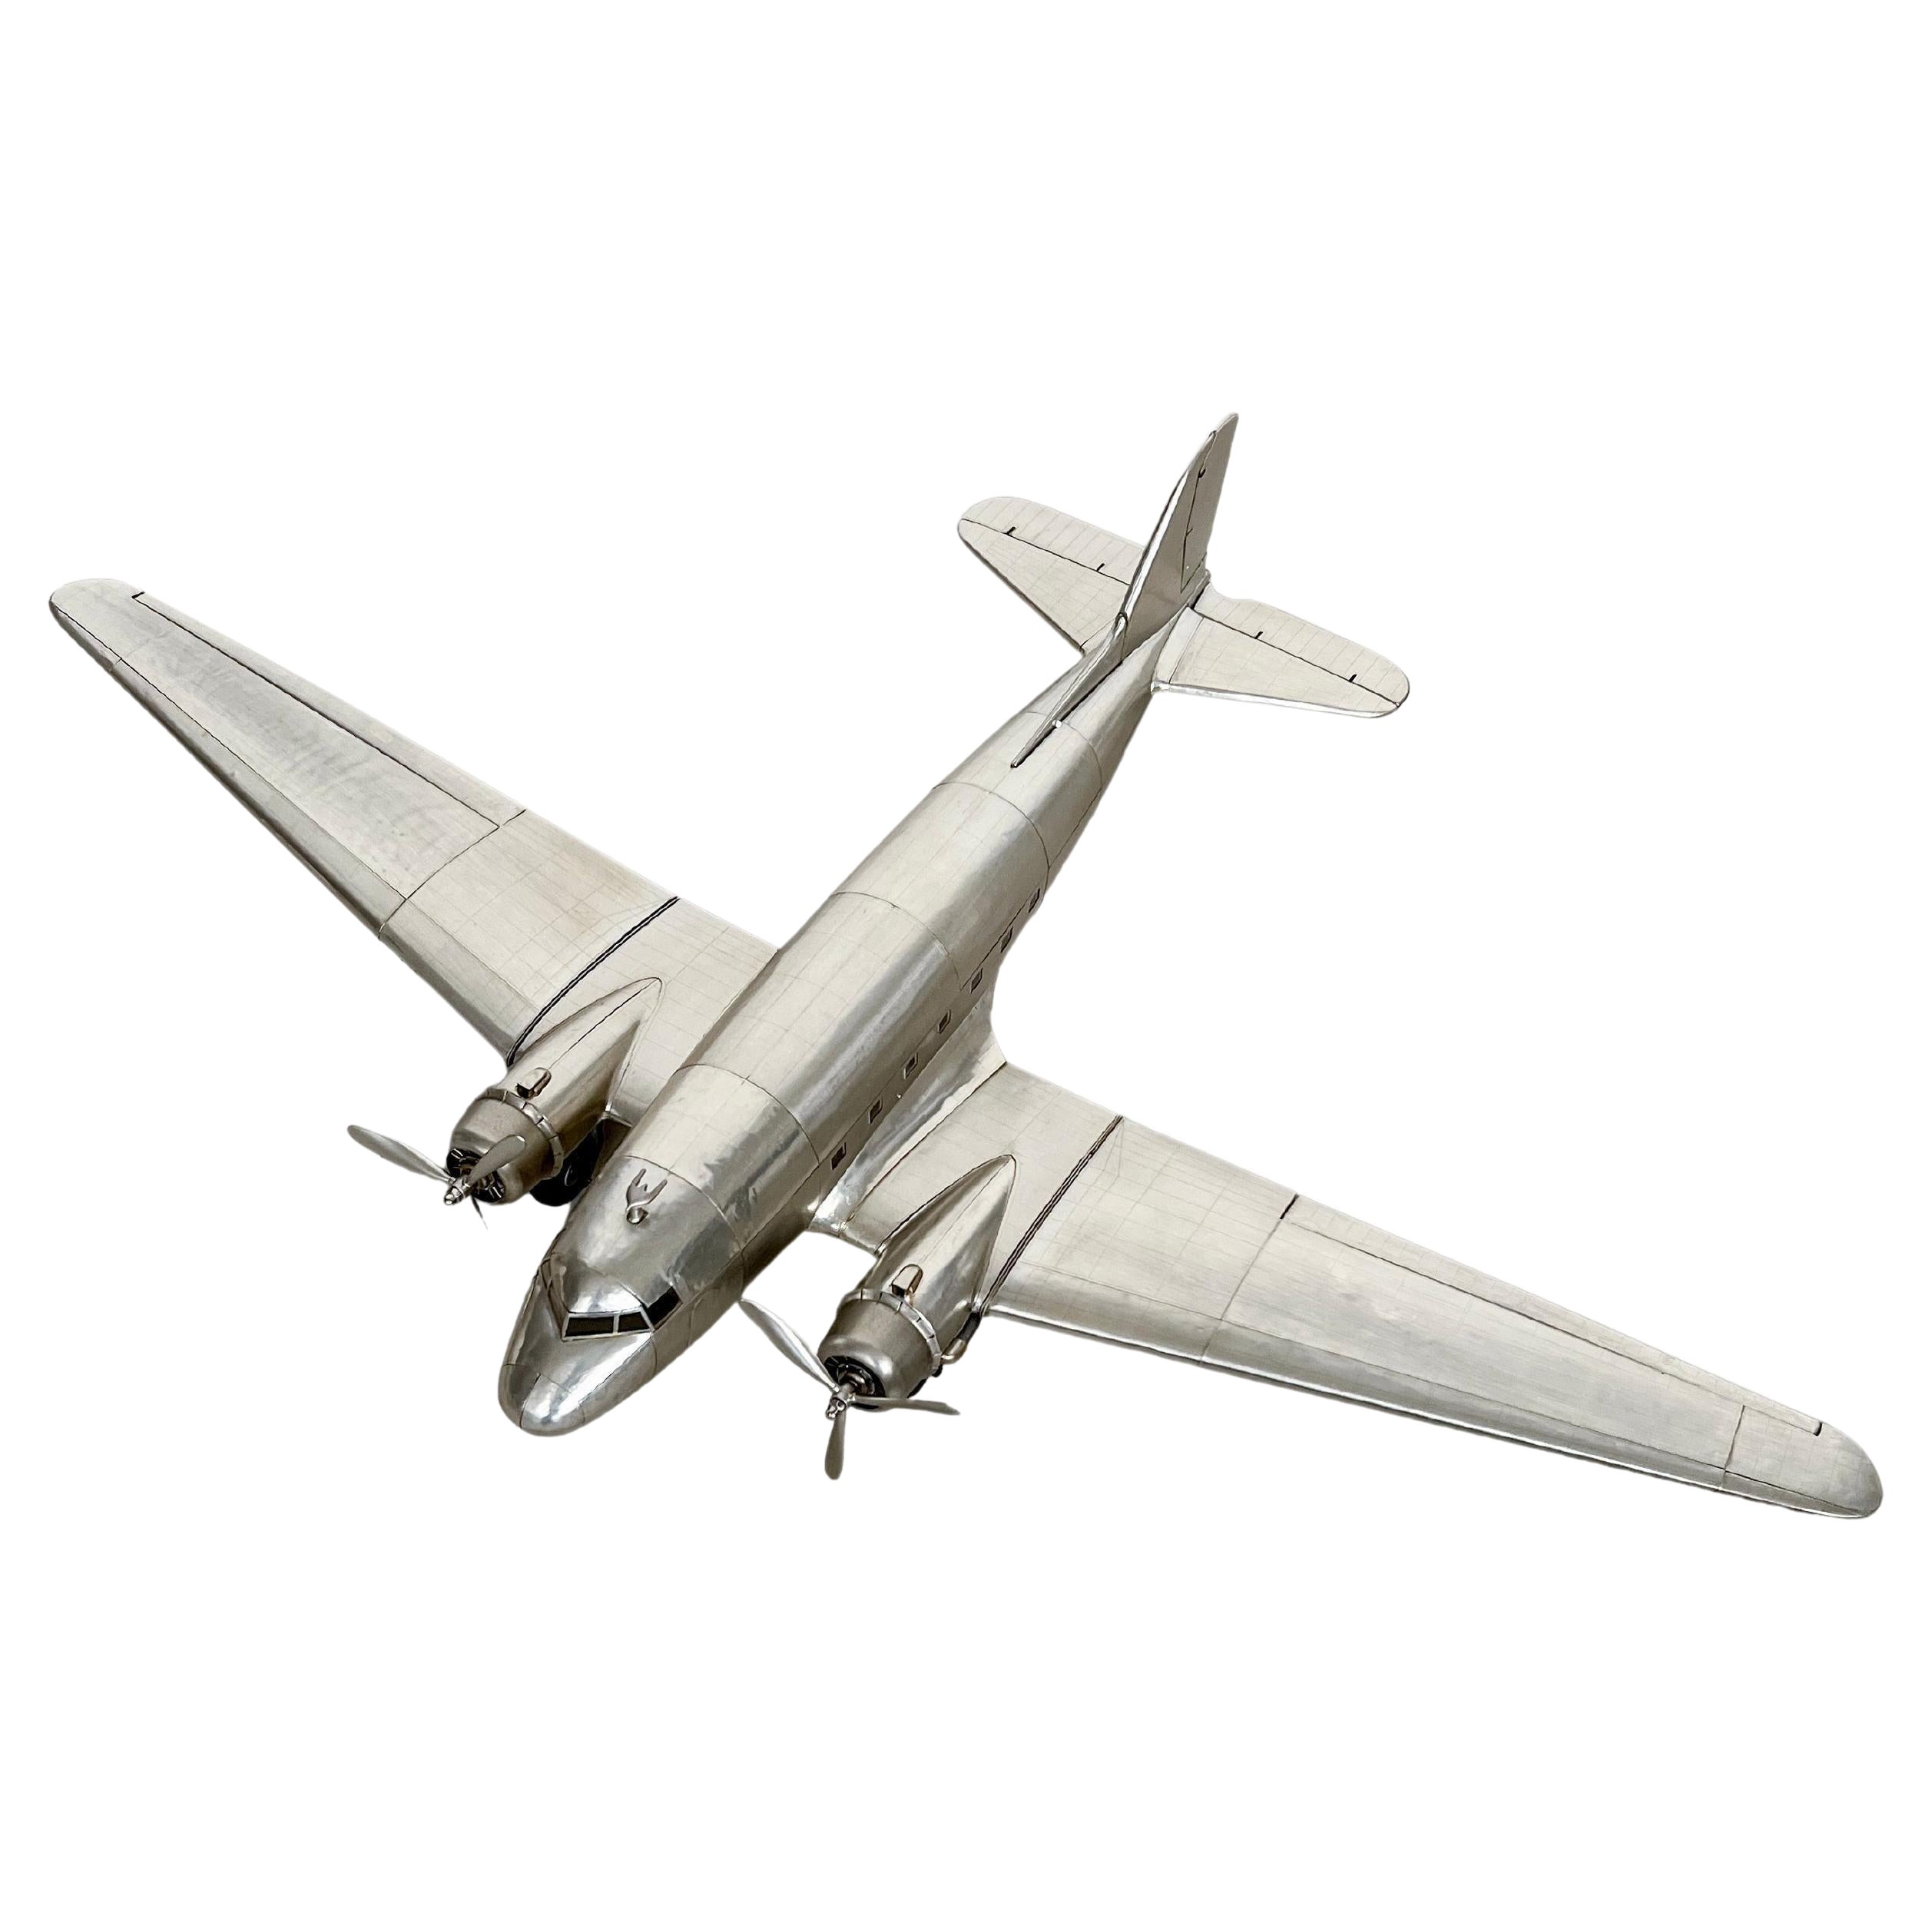 Douglas Dc-3 Aircraft Modell, groß, reichhaltig detailliert, stromlinienförmiges Metallflugzeug im Angebot